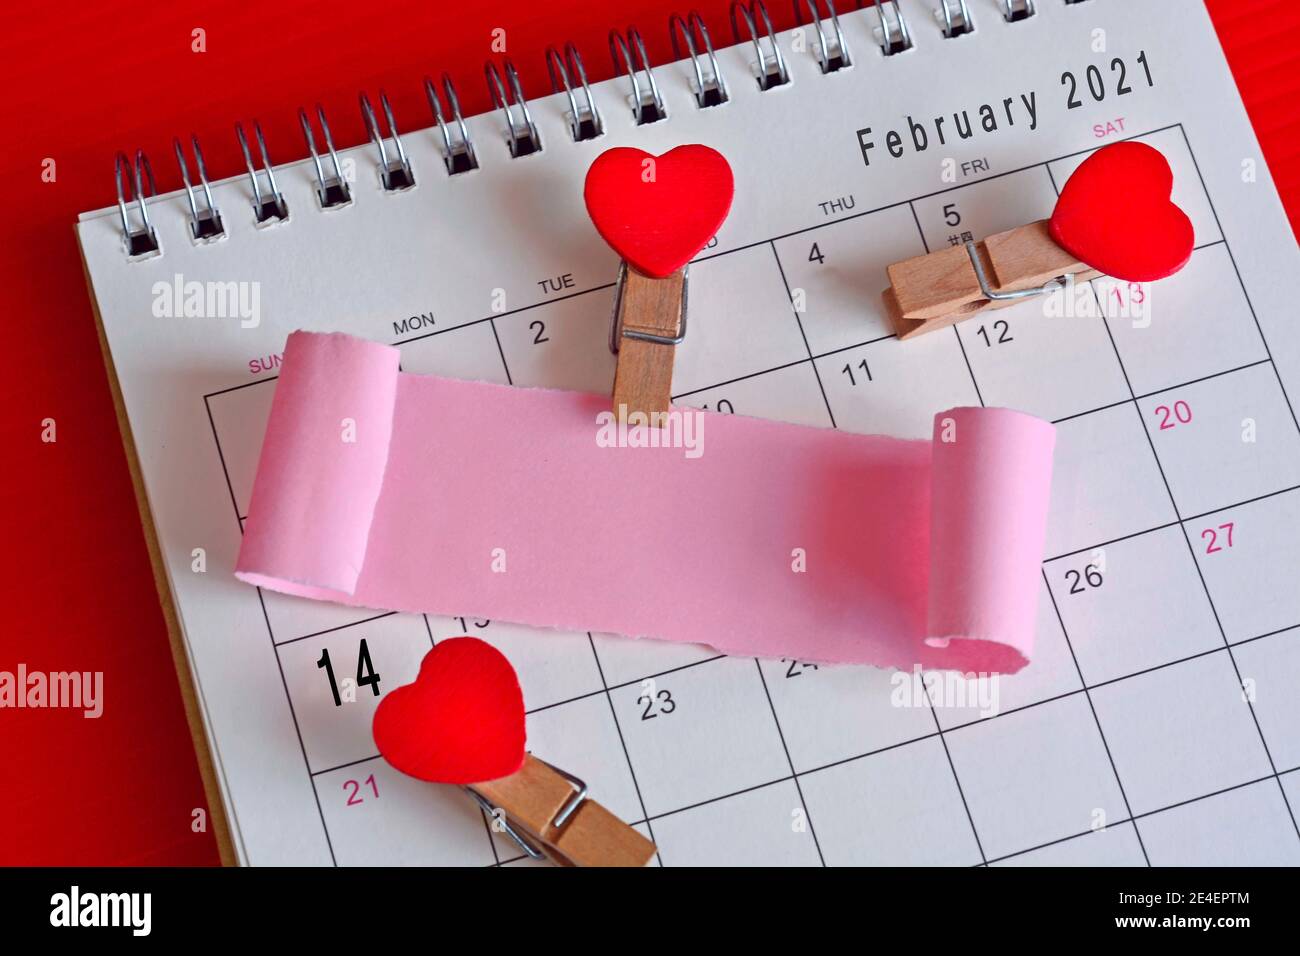 Papel roto en el calendario de febrero de 2021 con fondo rojo. Feliz día de San Valentín Foto de stock